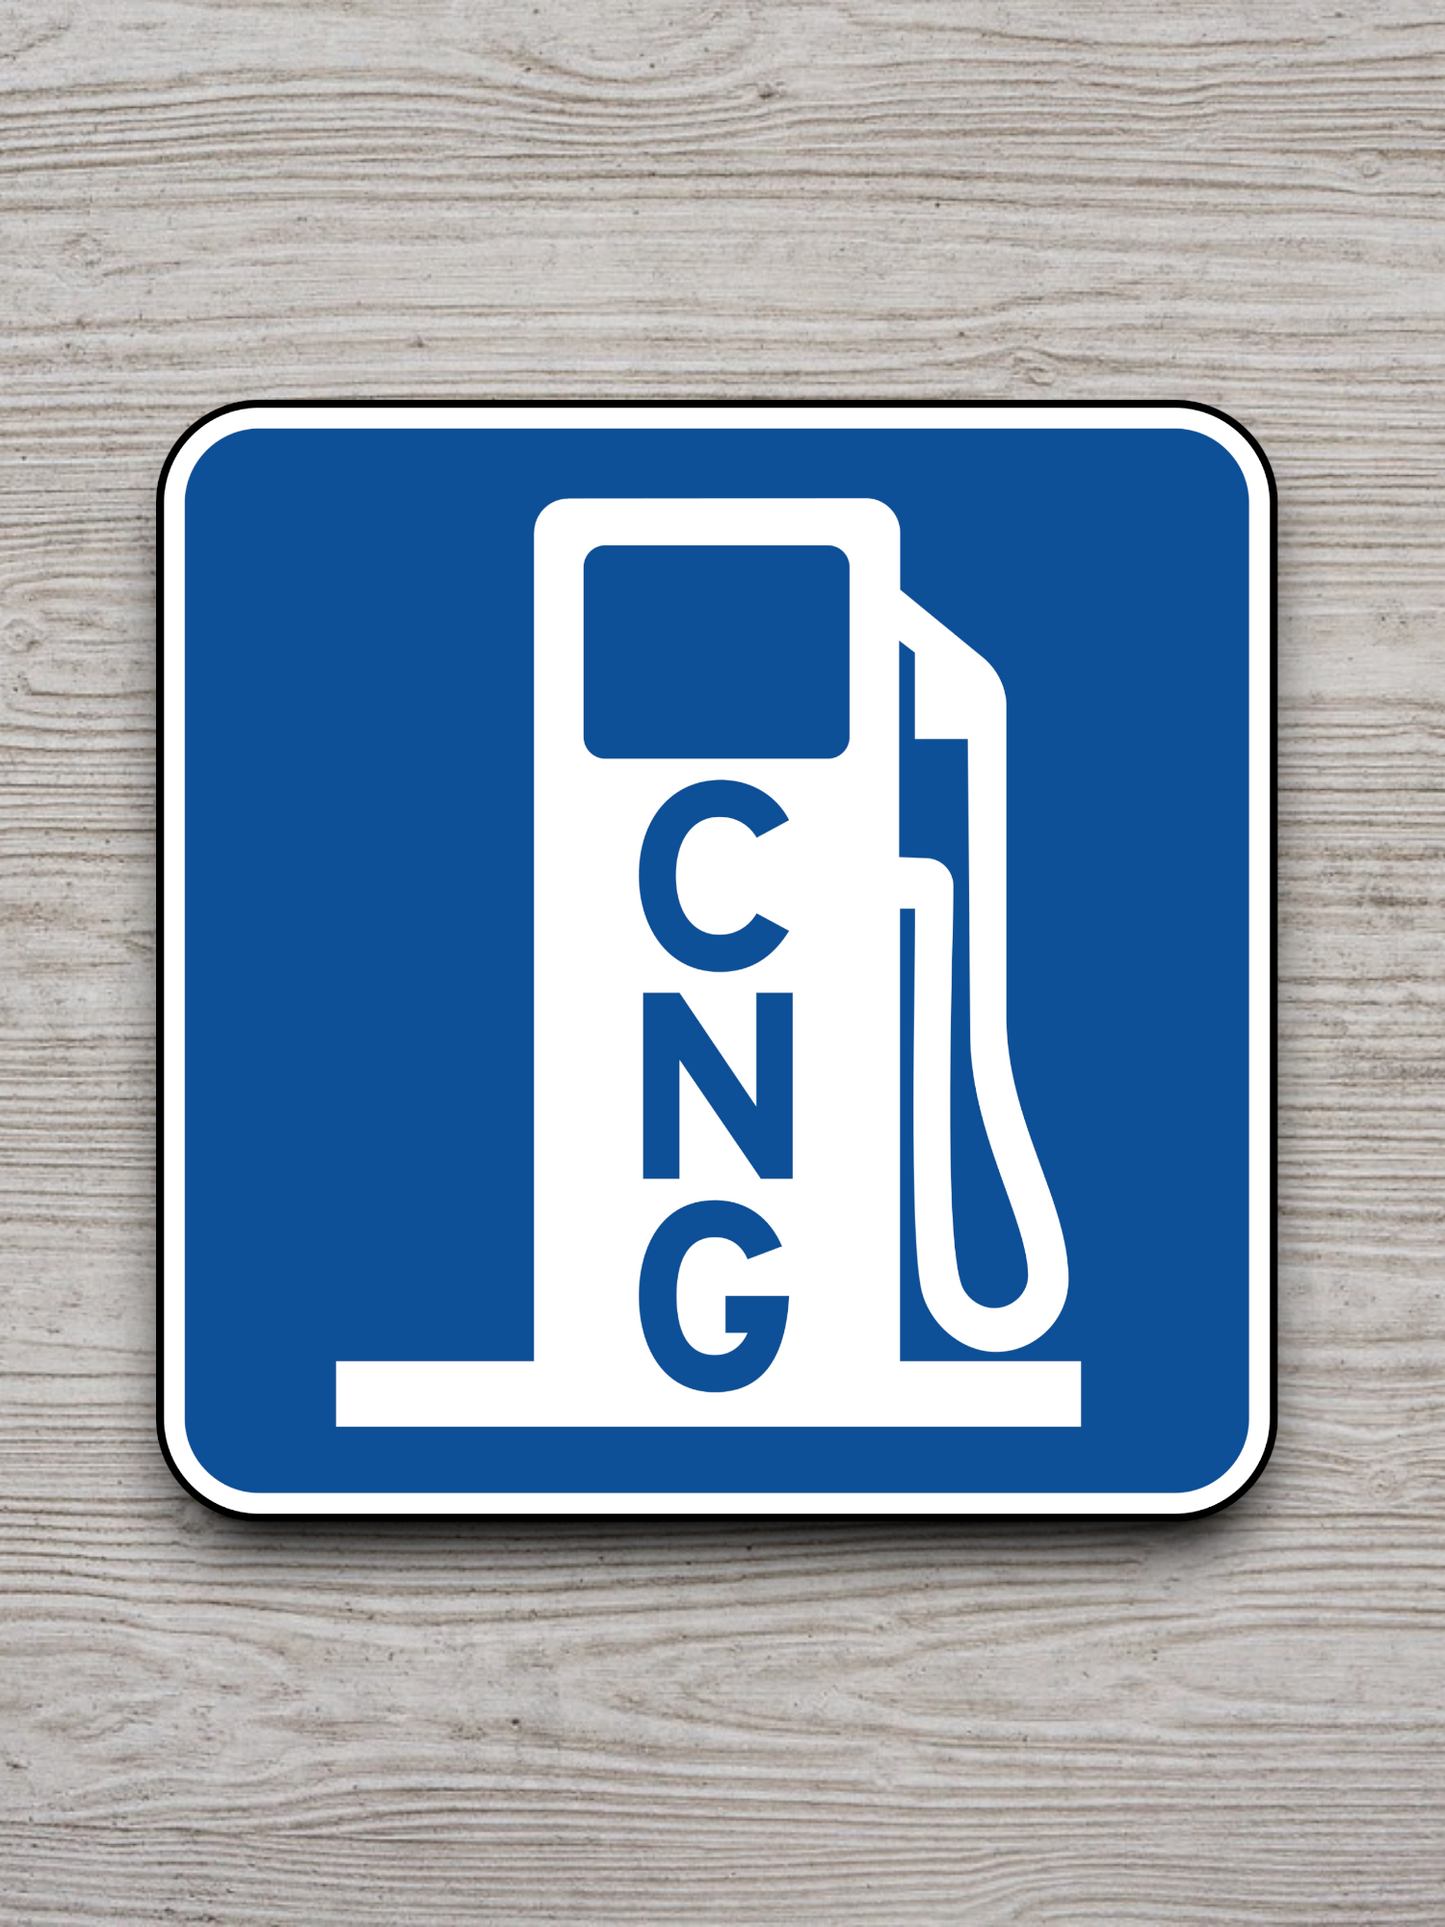 Alternative fuel (CNG) Sticker